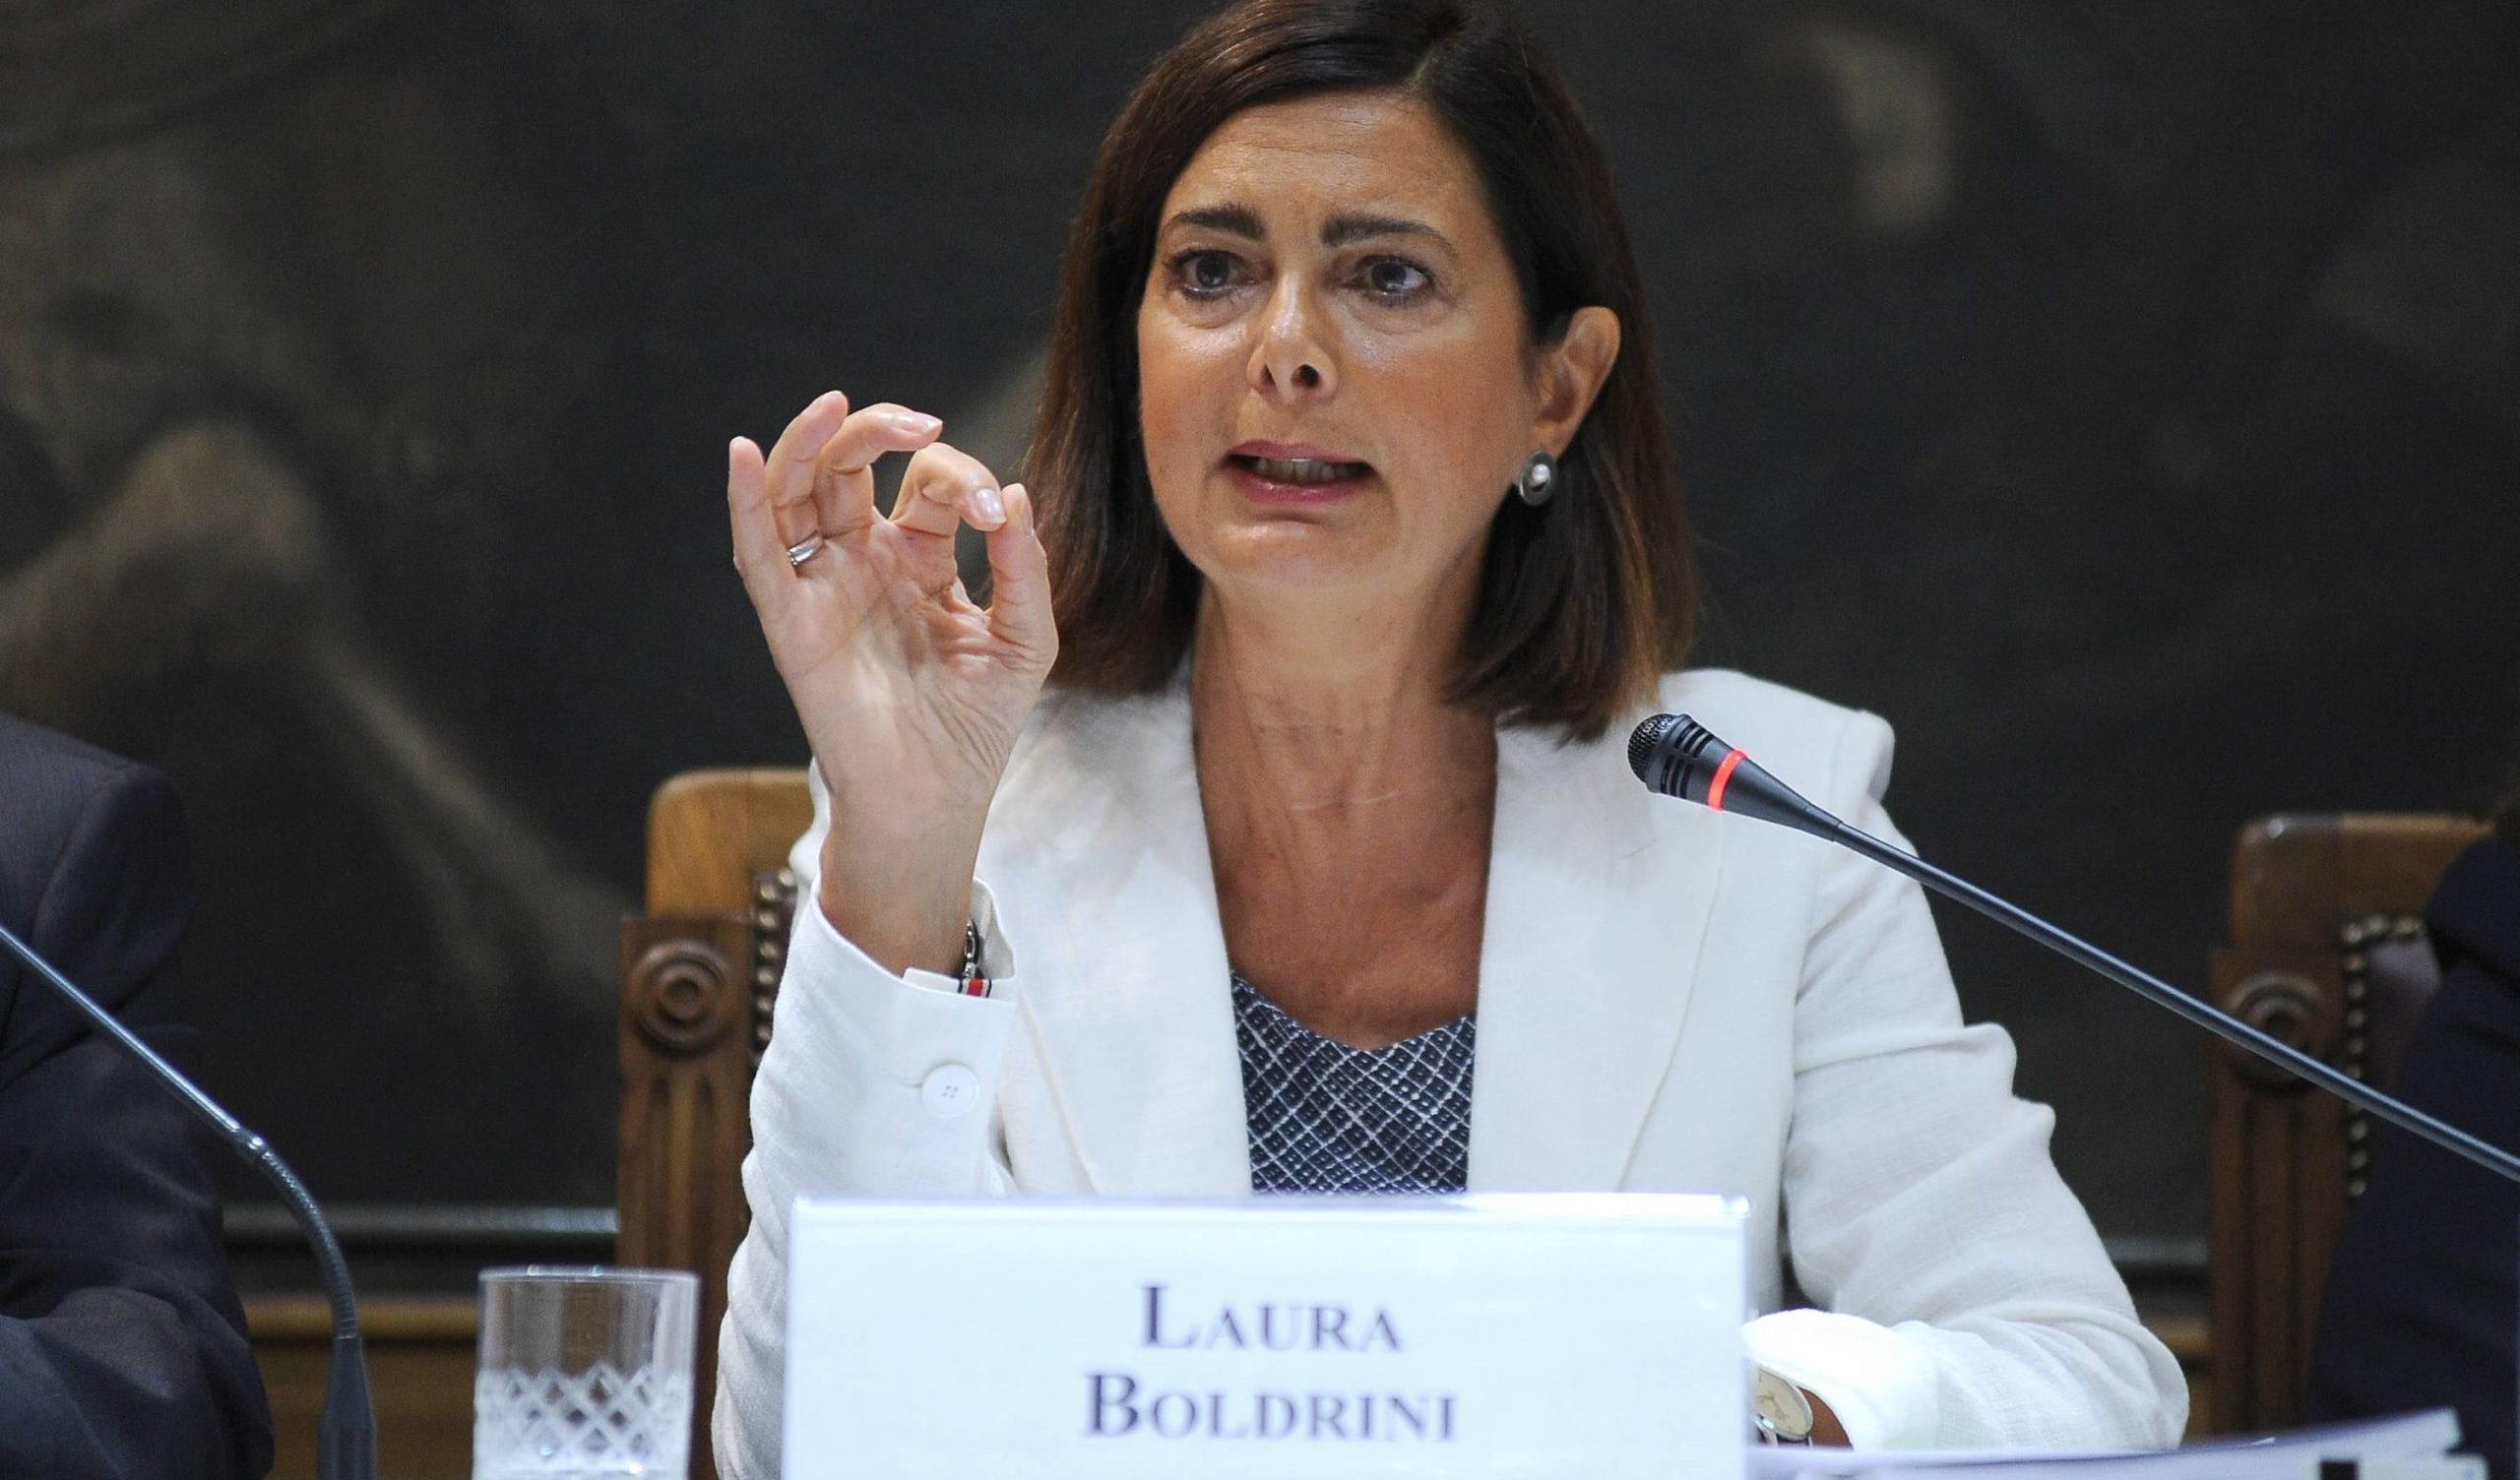 Guerra di Gaza, Laura Boldrini: “L’obiettivo di Netanyahu è chiaro: annientare il popolo palestinese”